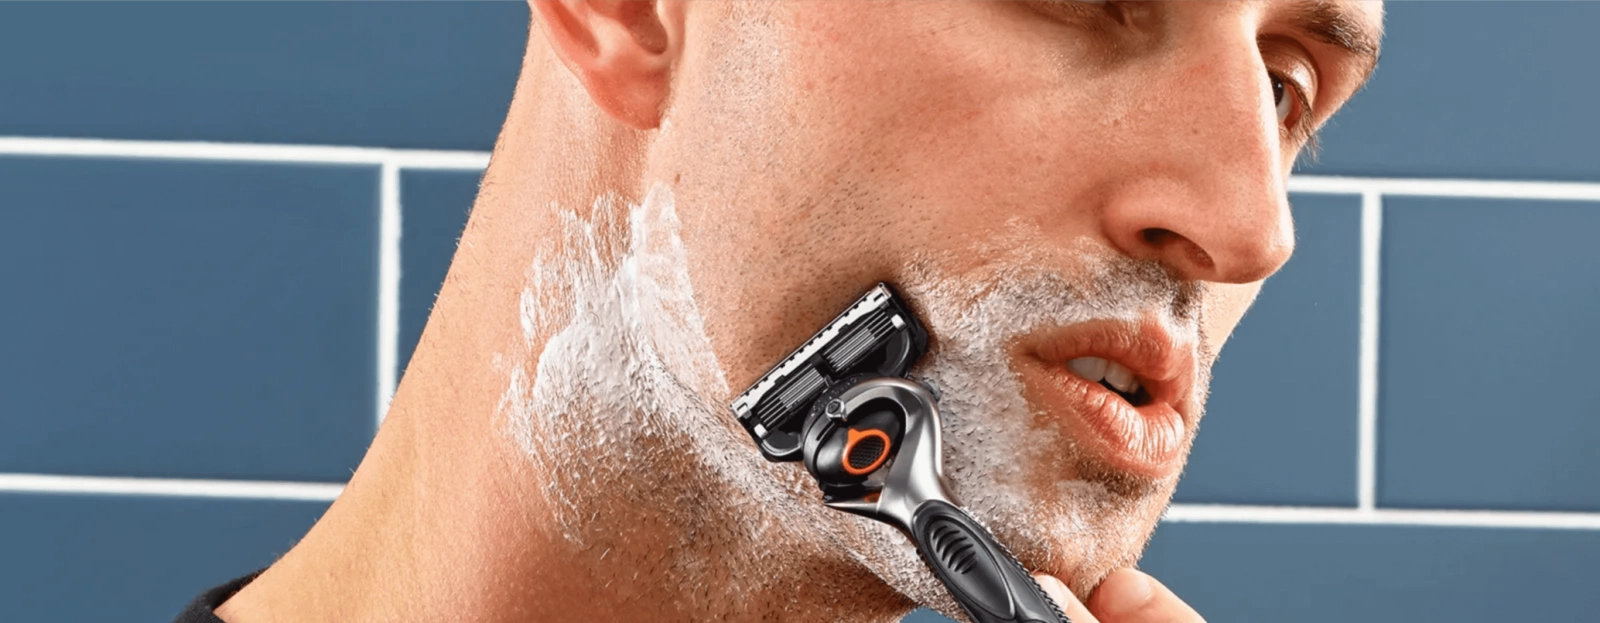 Neden çok bıçaklı bir tıraş makinesine ihtiyacınız var?